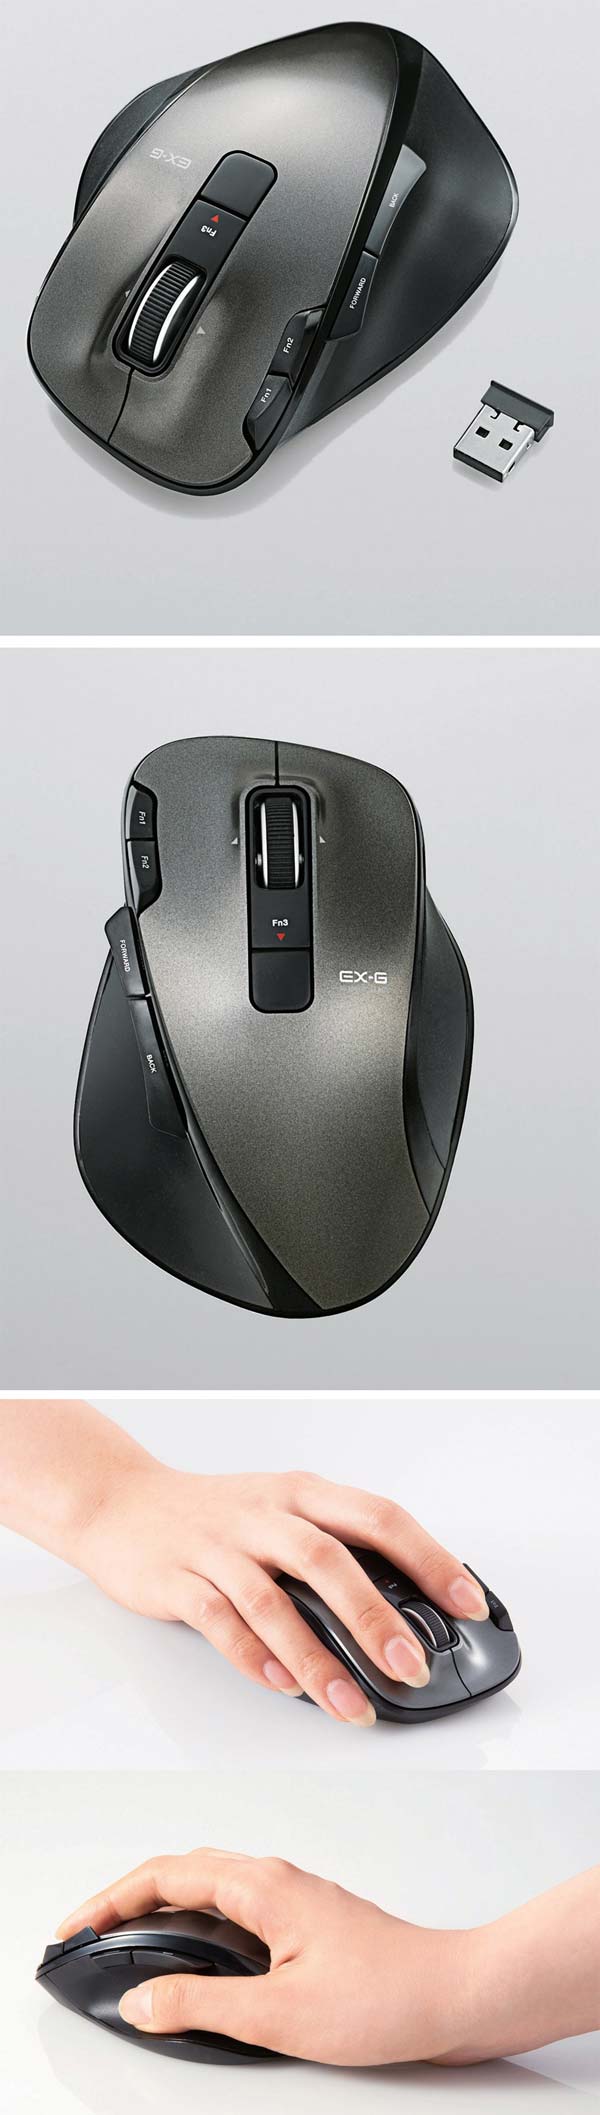 Elecom M-XG3DLBK - новая беспроводная мышка